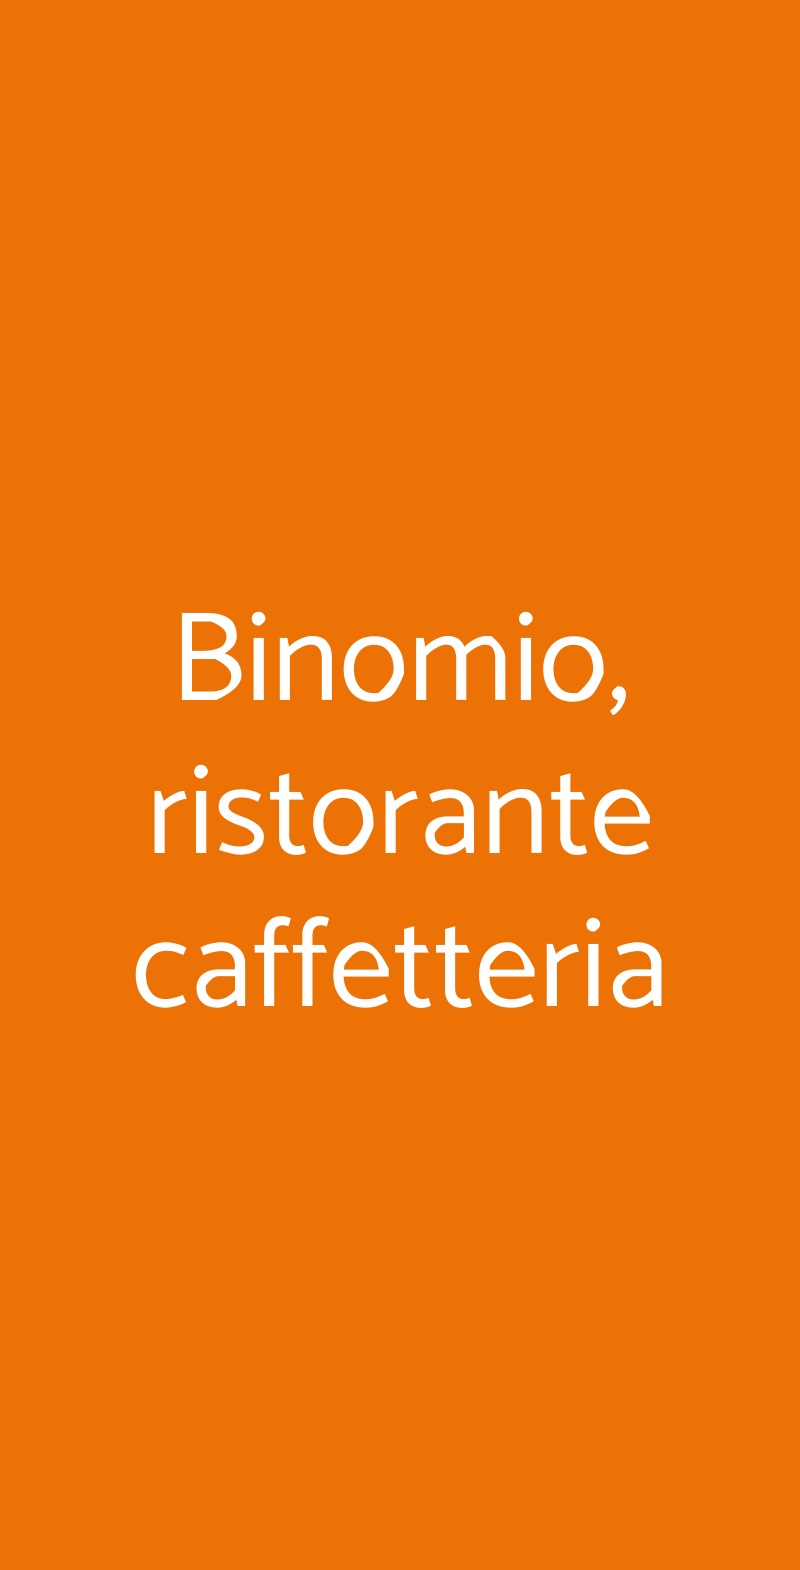 Binomio, ristorante caffetteria Dalmine menù 1 pagina